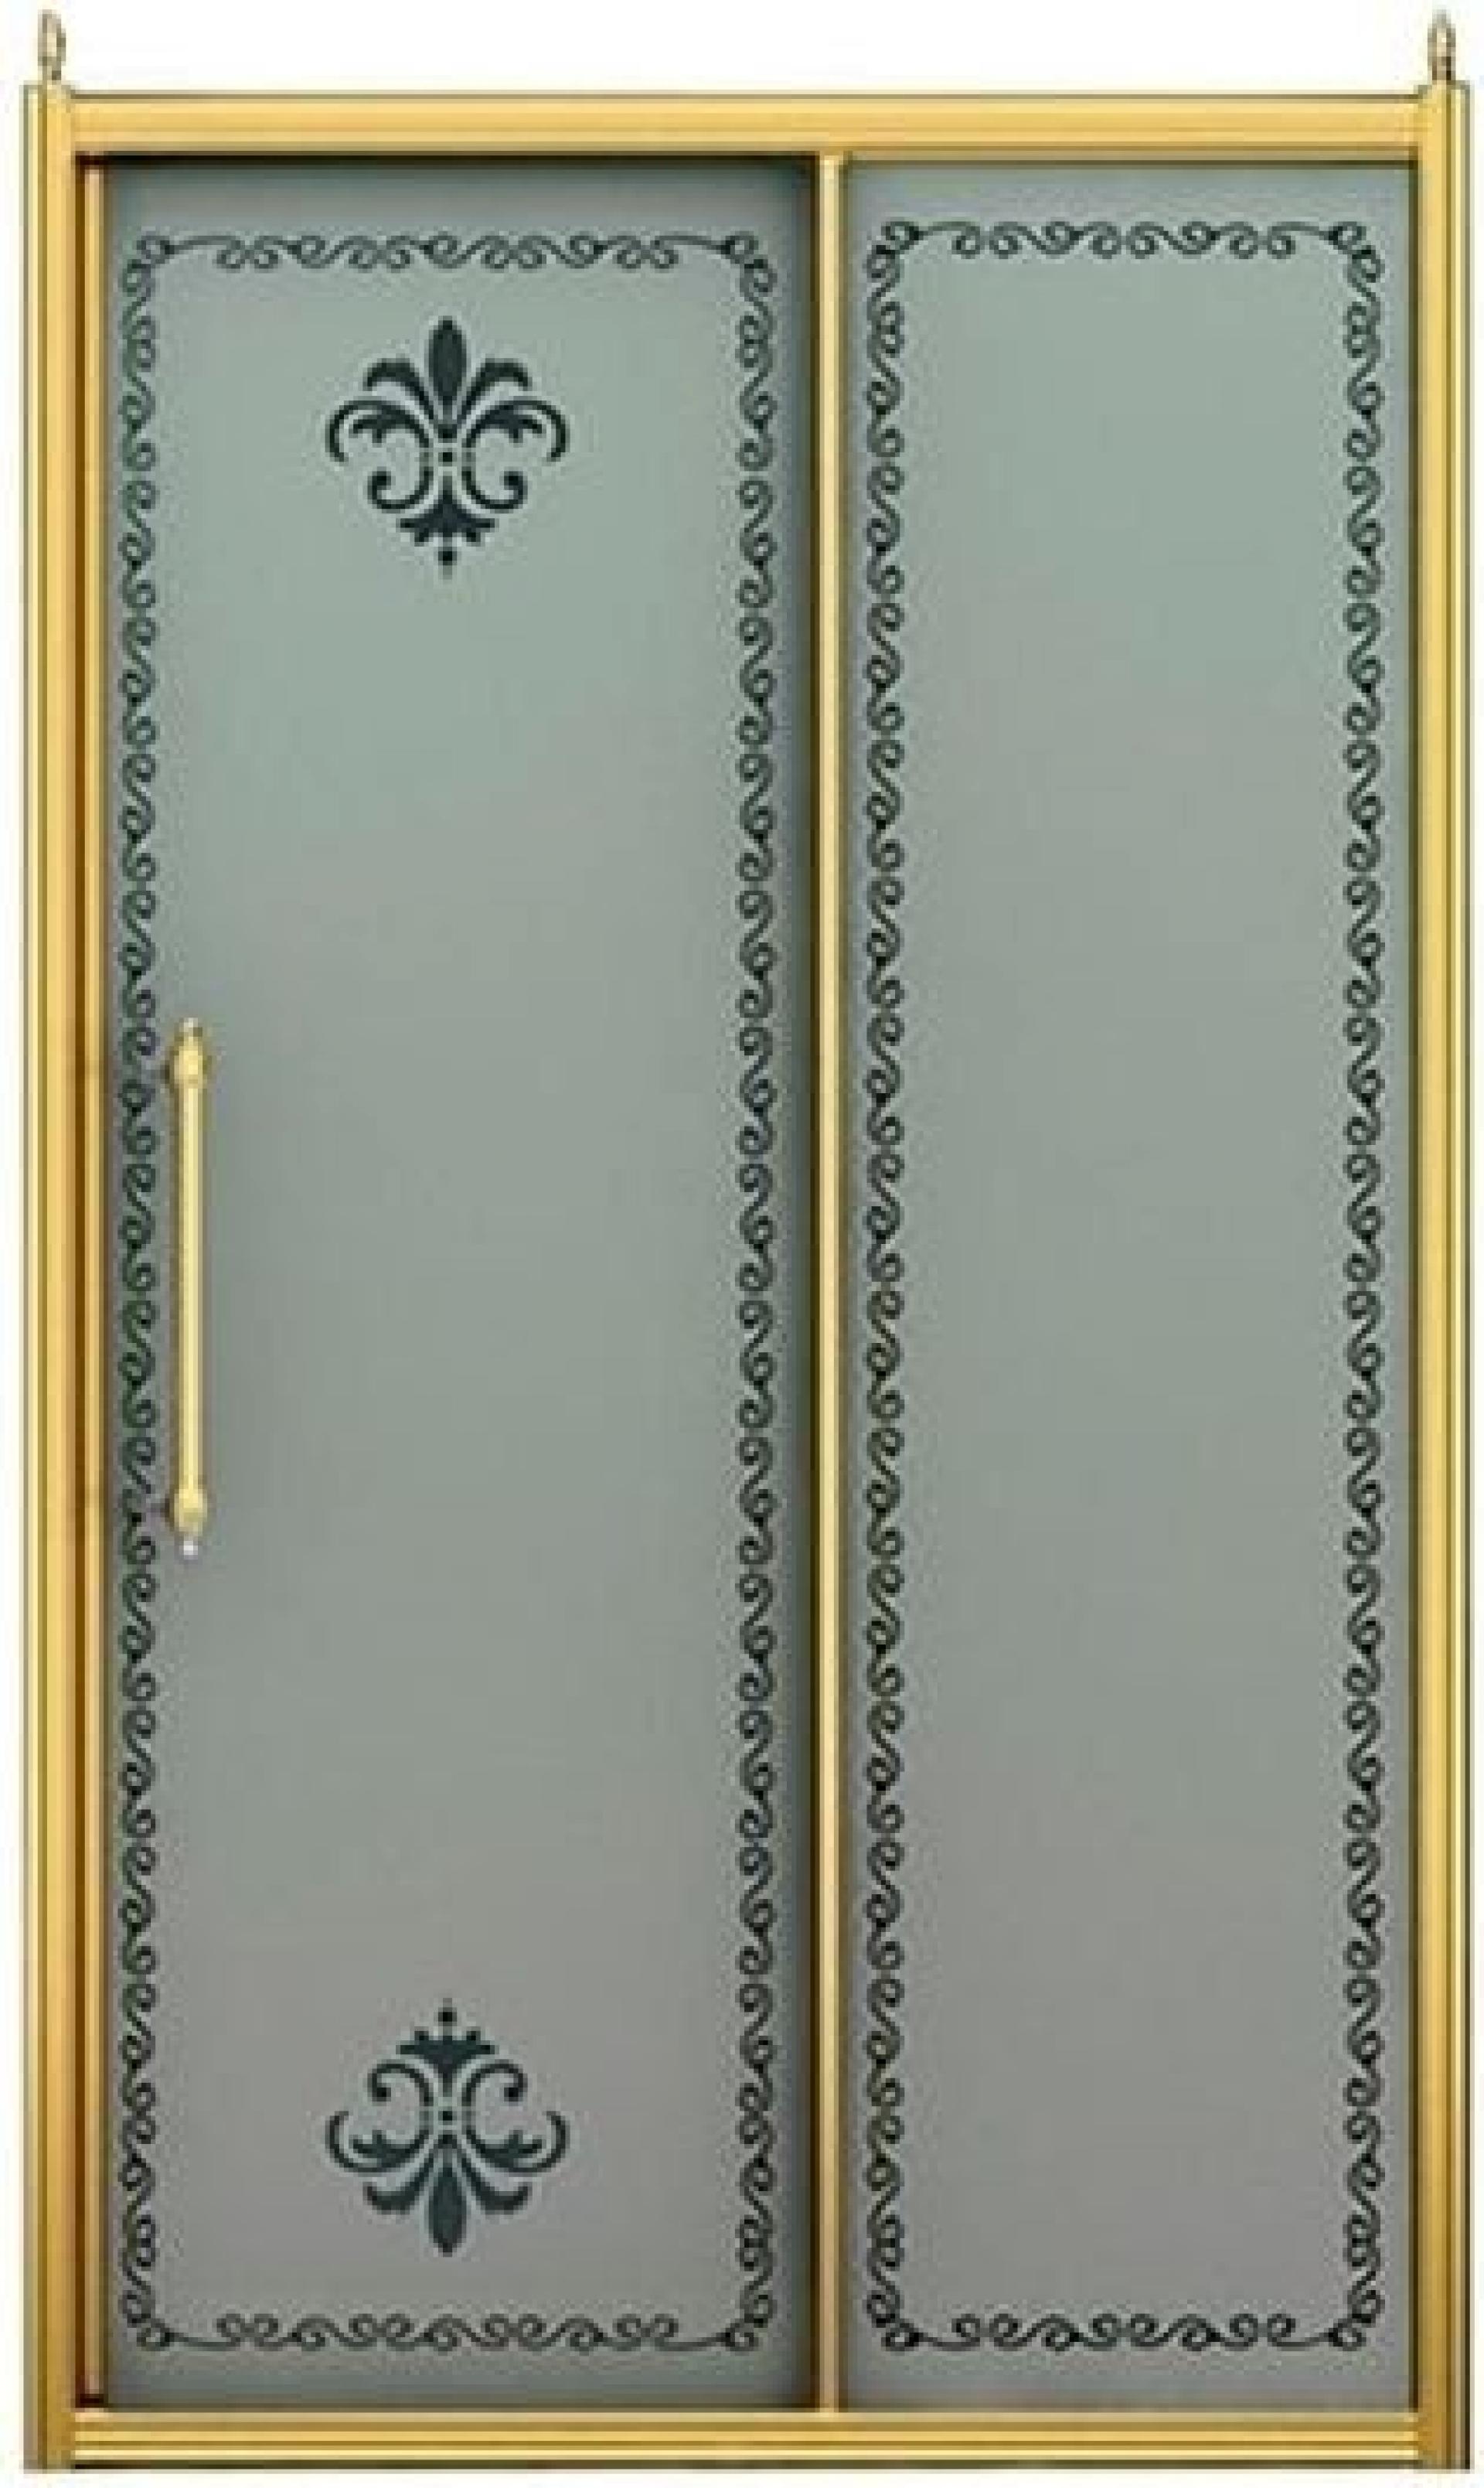 Душевая дверь в нишу Cezares RETRO-BF-1-140-PP-Br матовое с прозрачным  принтом